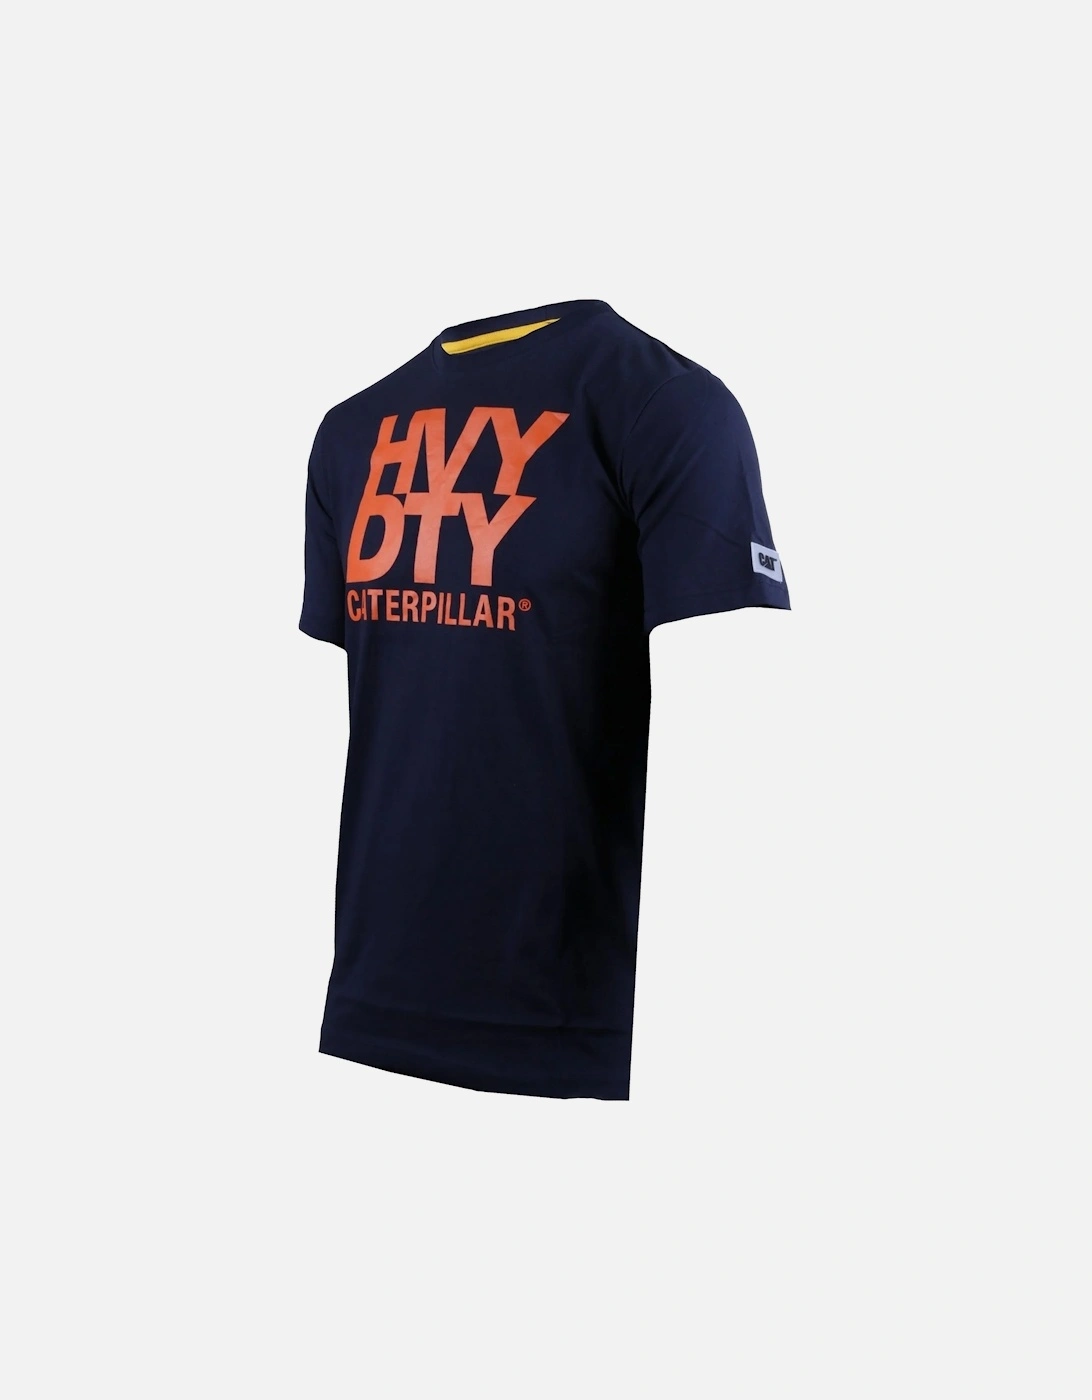 Mens Trademark Logo Heavy Duty T-Shirt